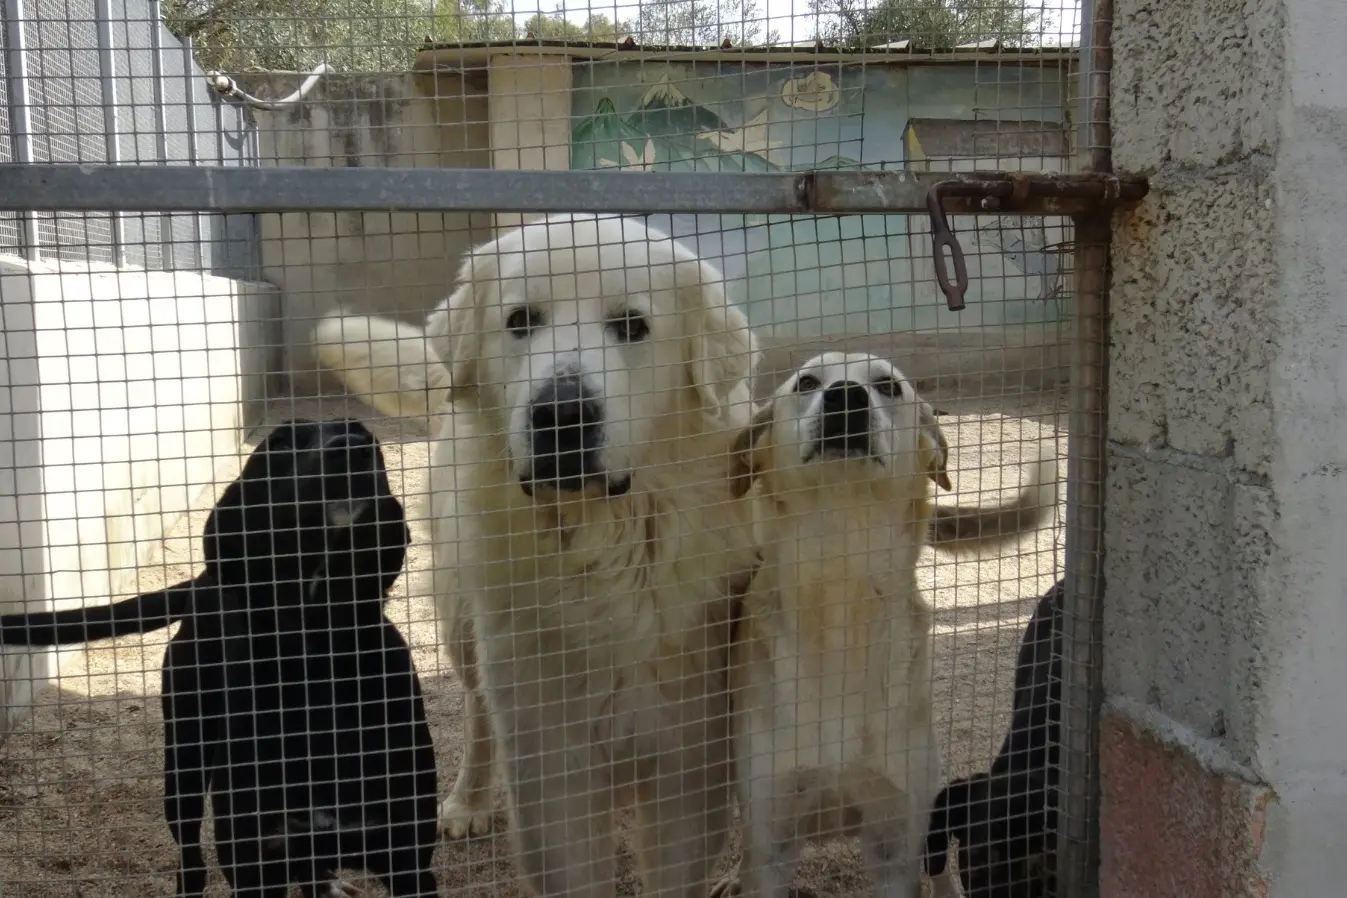 Tre dei cani che vivono nel canile (foto Pinna)